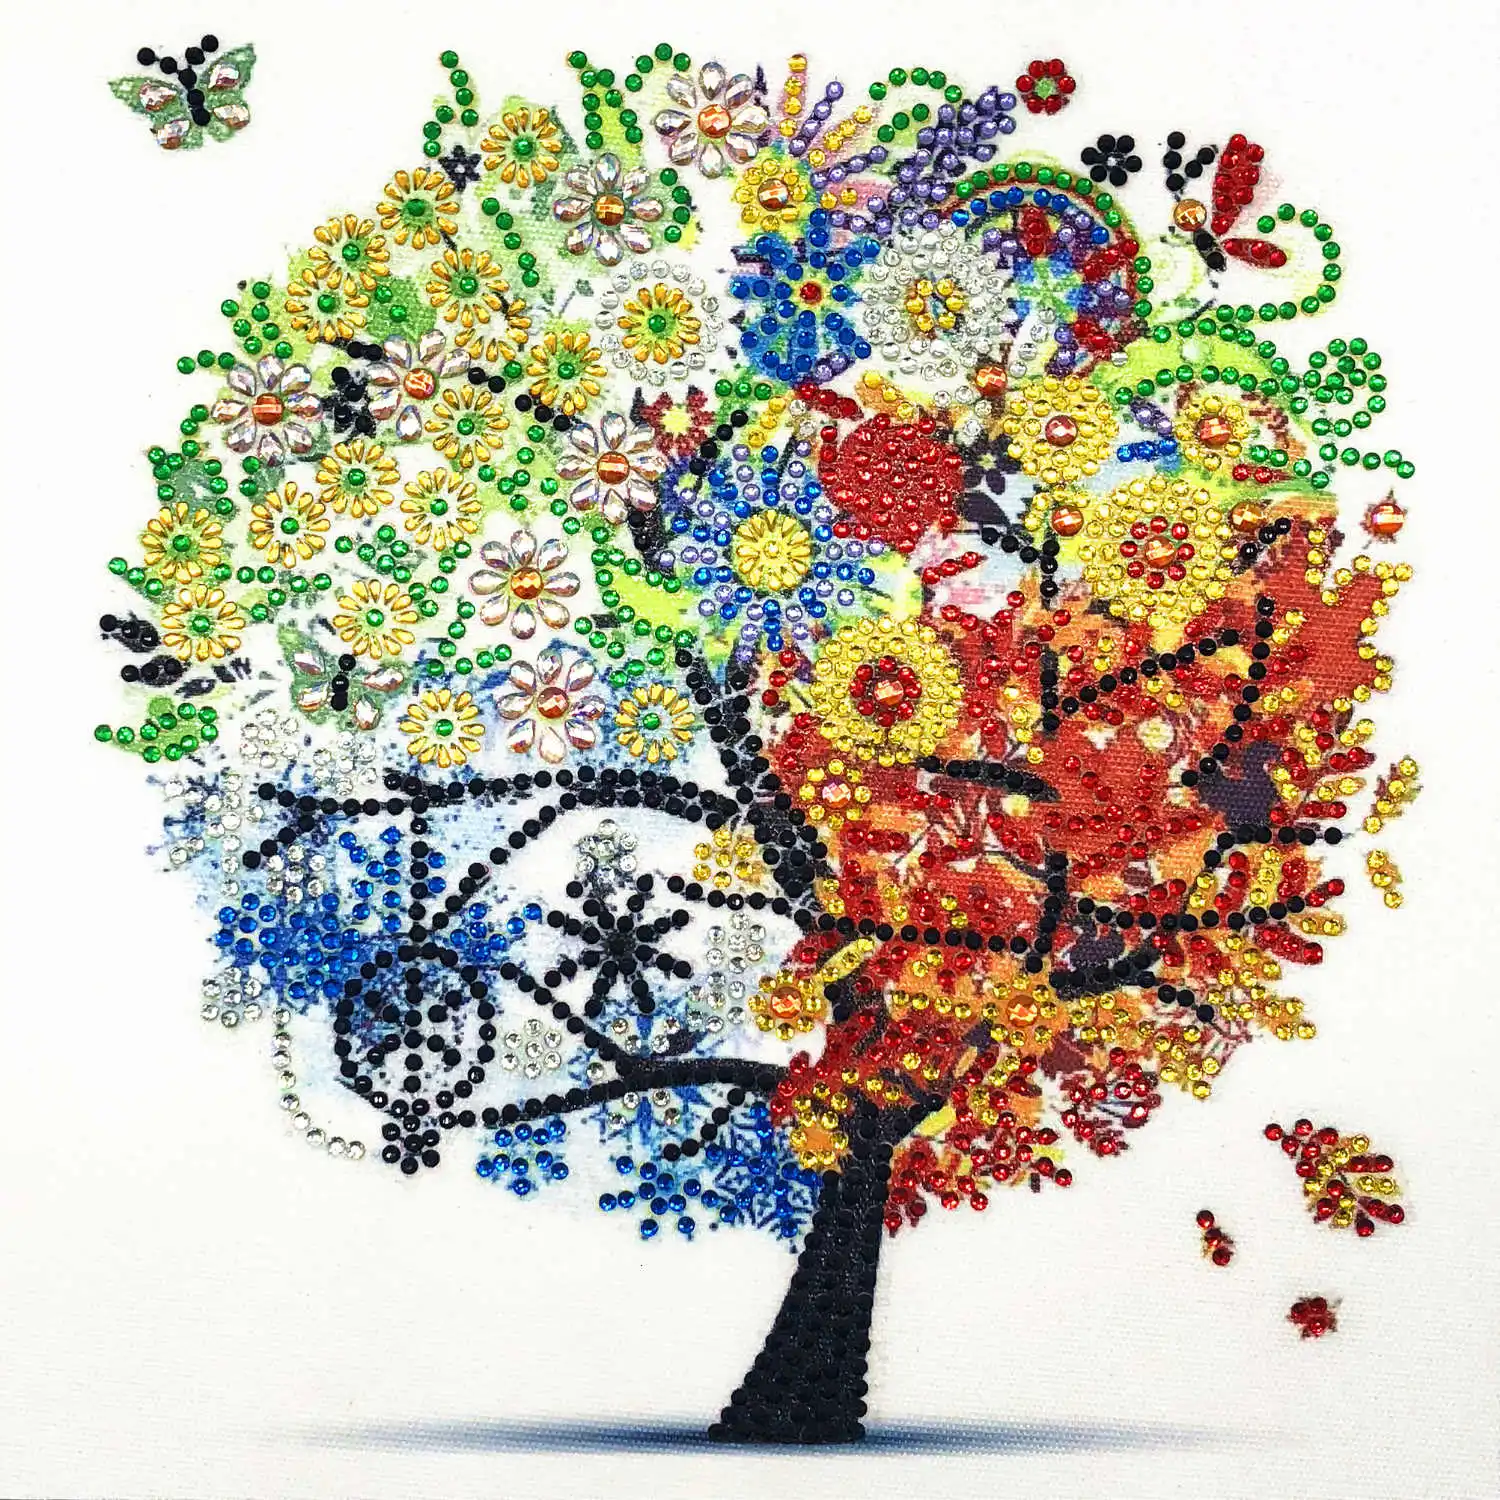 AZQSD алмазная живопись мозаика дерево особой формы ручной работы подарок картина стразы цветок дрель домашний декор 24x24 см - Цвет: R8203